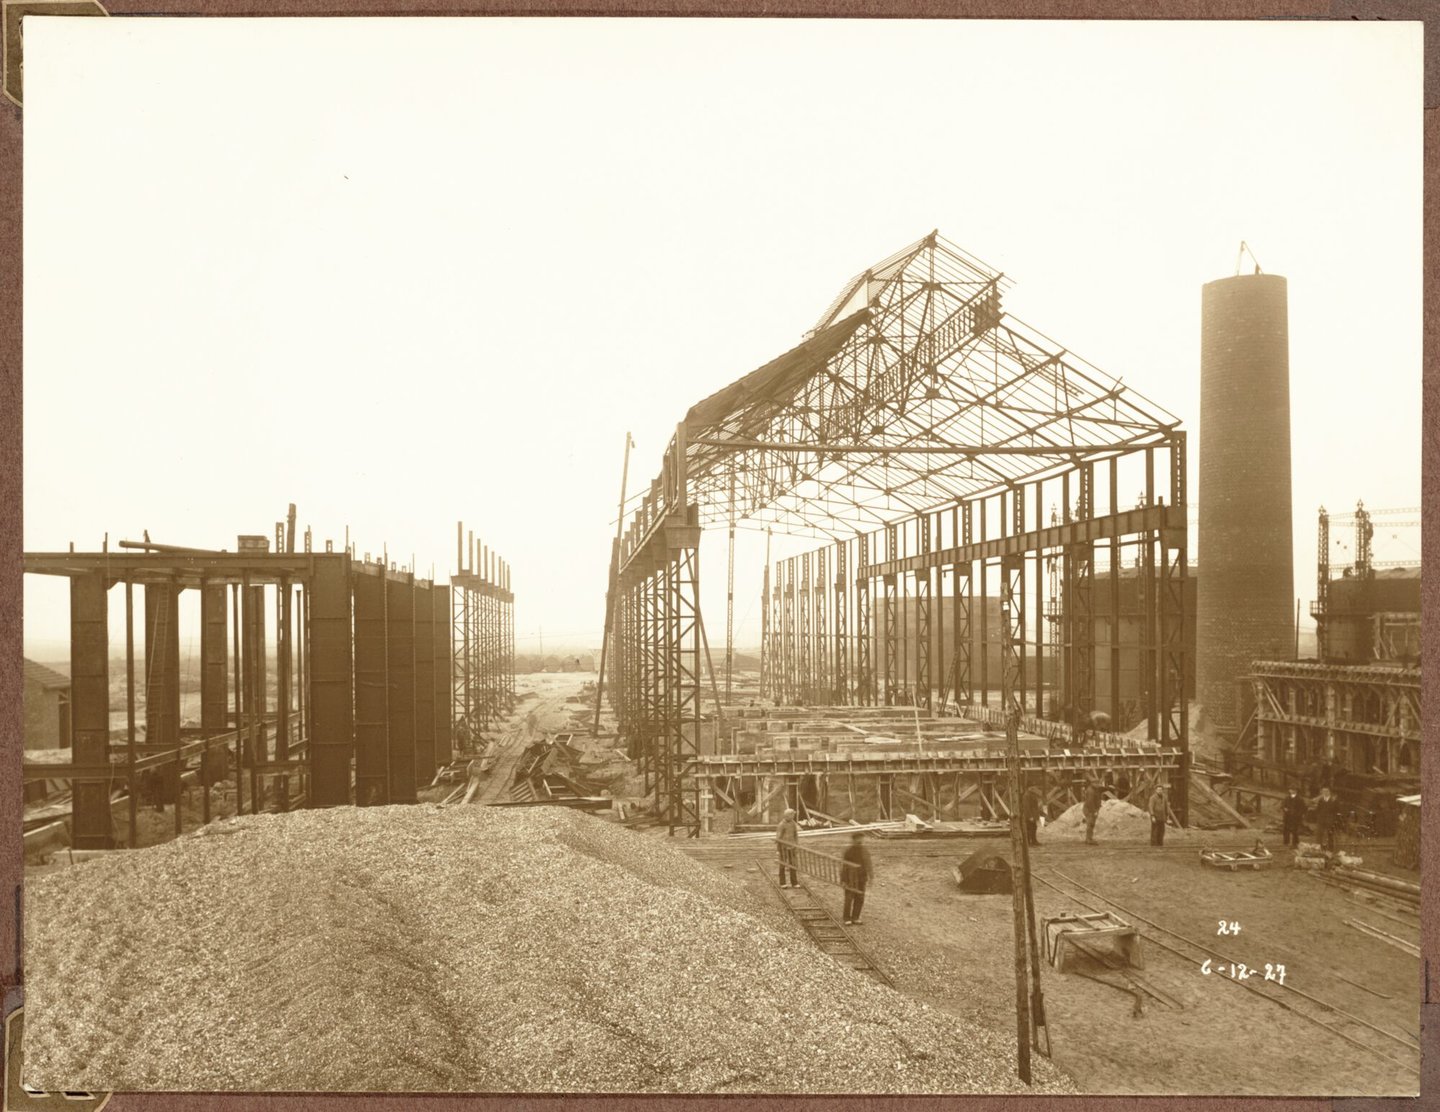 Bouw van betonnen portiek van ammoniakfabriek van cokesfabriek Kuhlmann in Zelzate